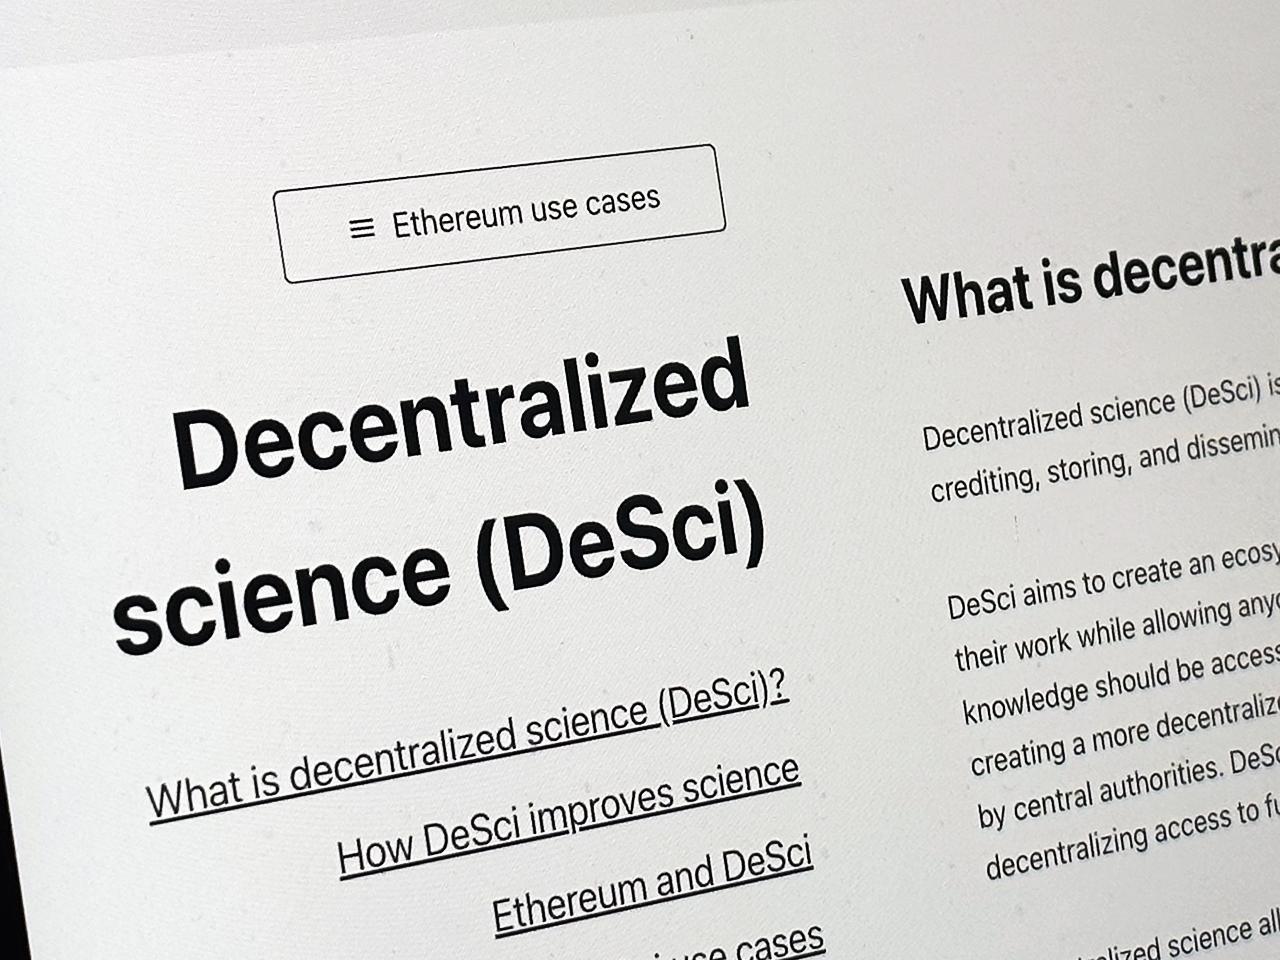 What is DeSci